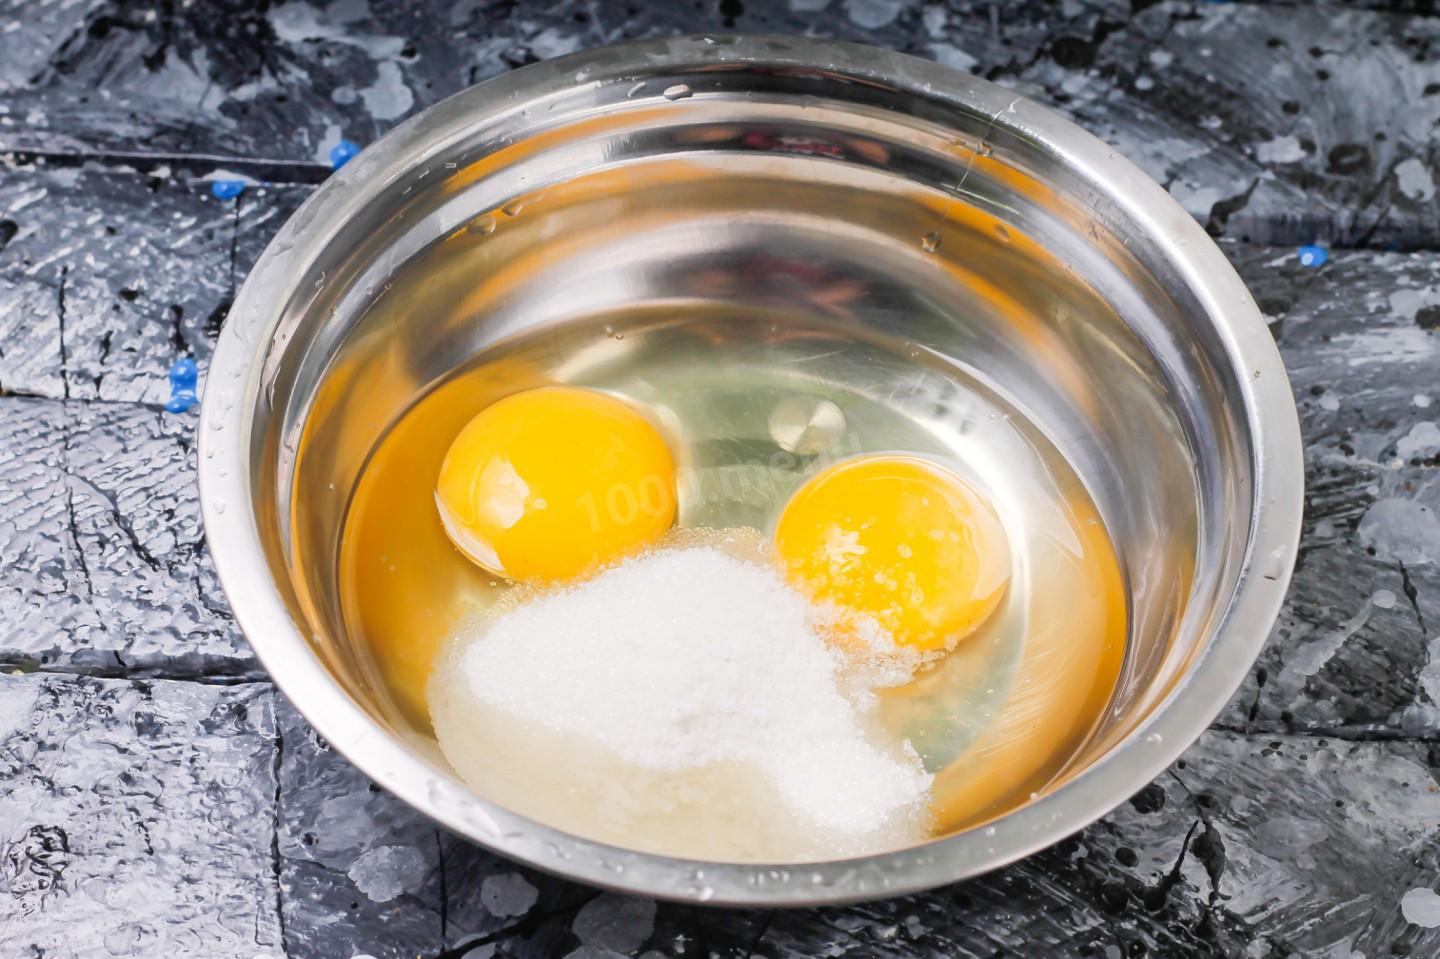 Блины 1 стакан молока 1 стакан кипятка 2 яйца. Разбить яйцо в кипяток. Яйца в кружке кипятком. Пиалка яйцо кипяток. Блины молоко и вода кипяток